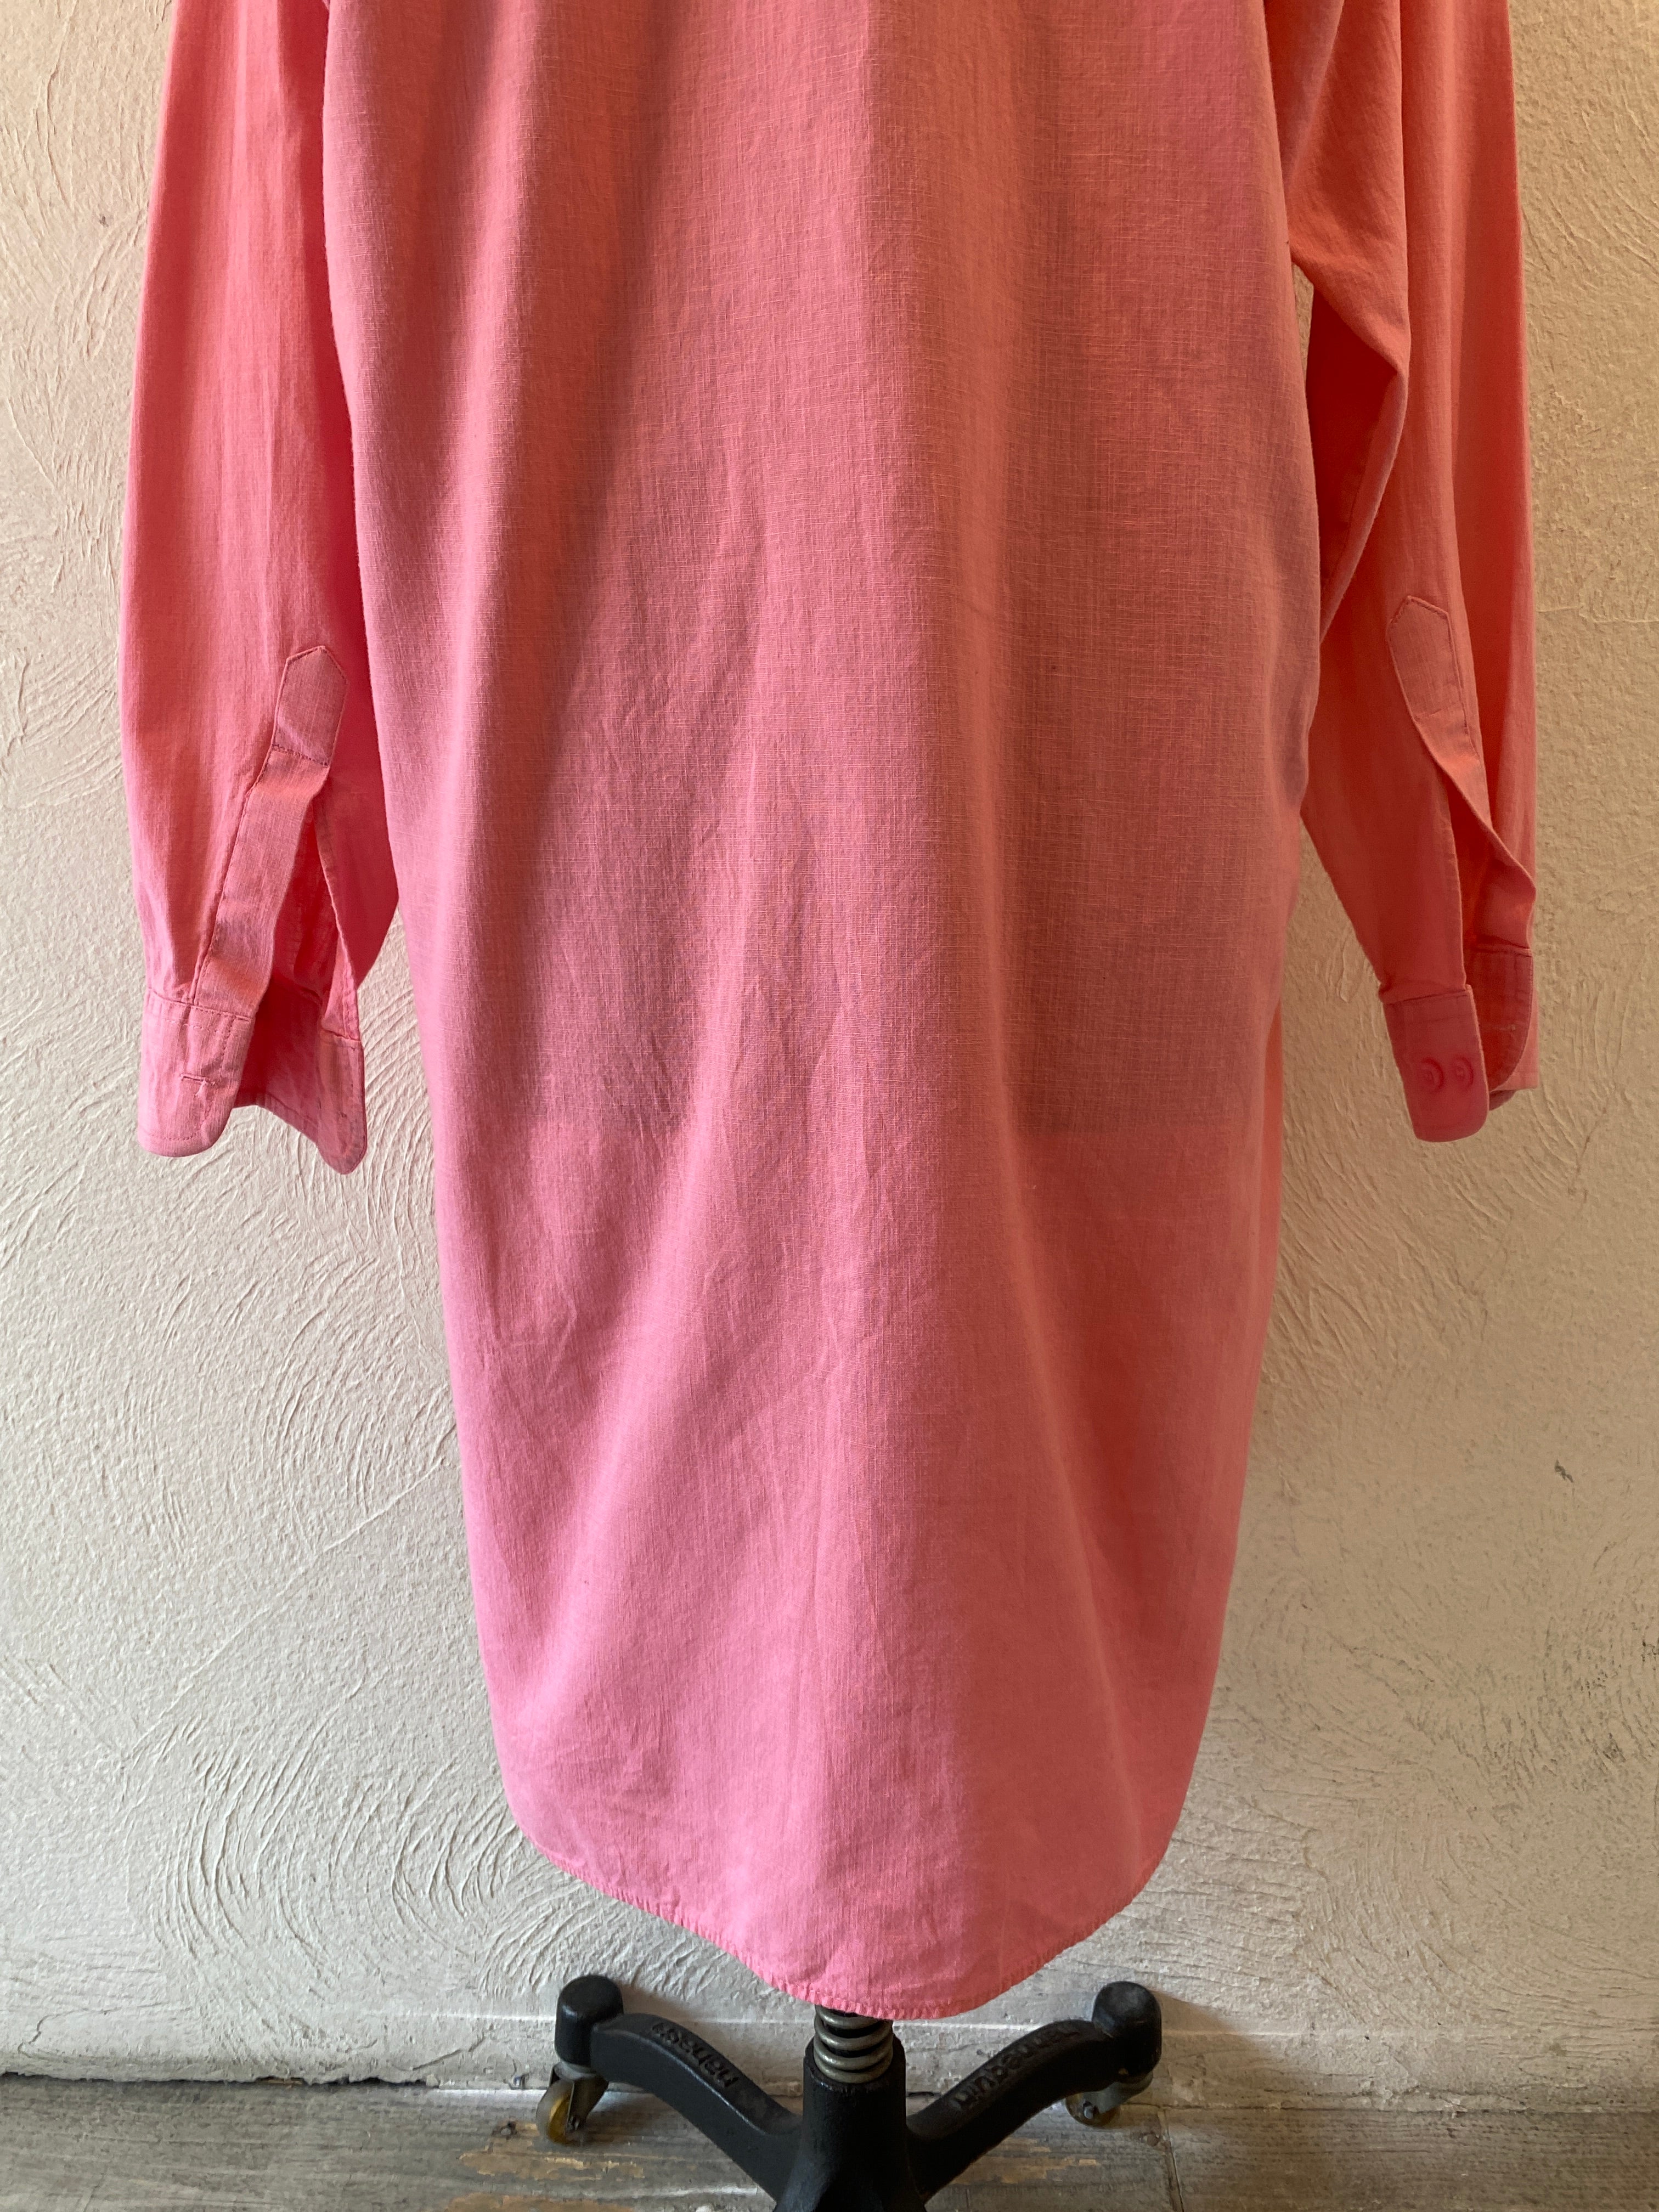 pink shirts dress